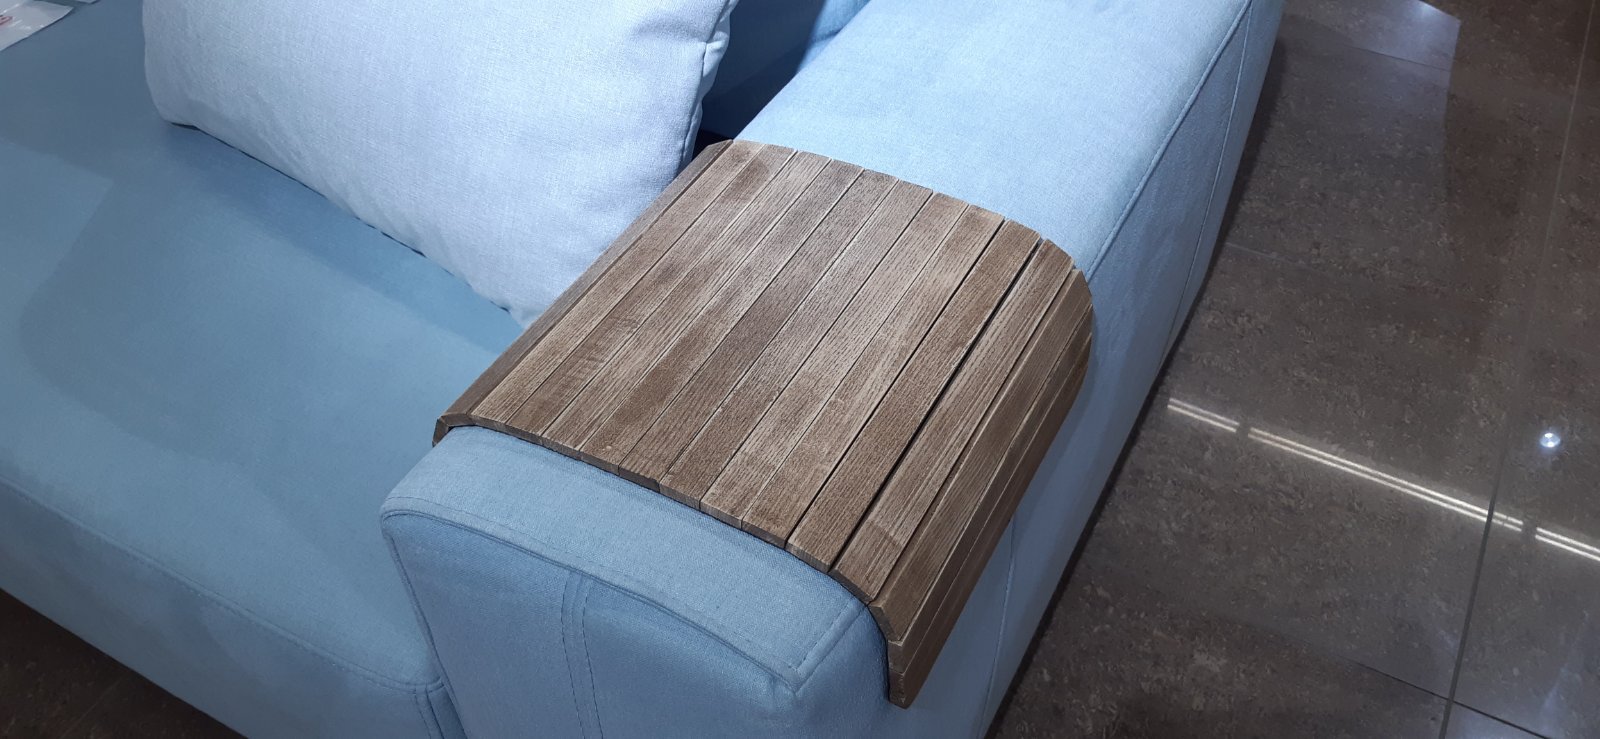 Деревянная накладка, столик, коврик на подлокотник дивана( винтаж) #2i2ua